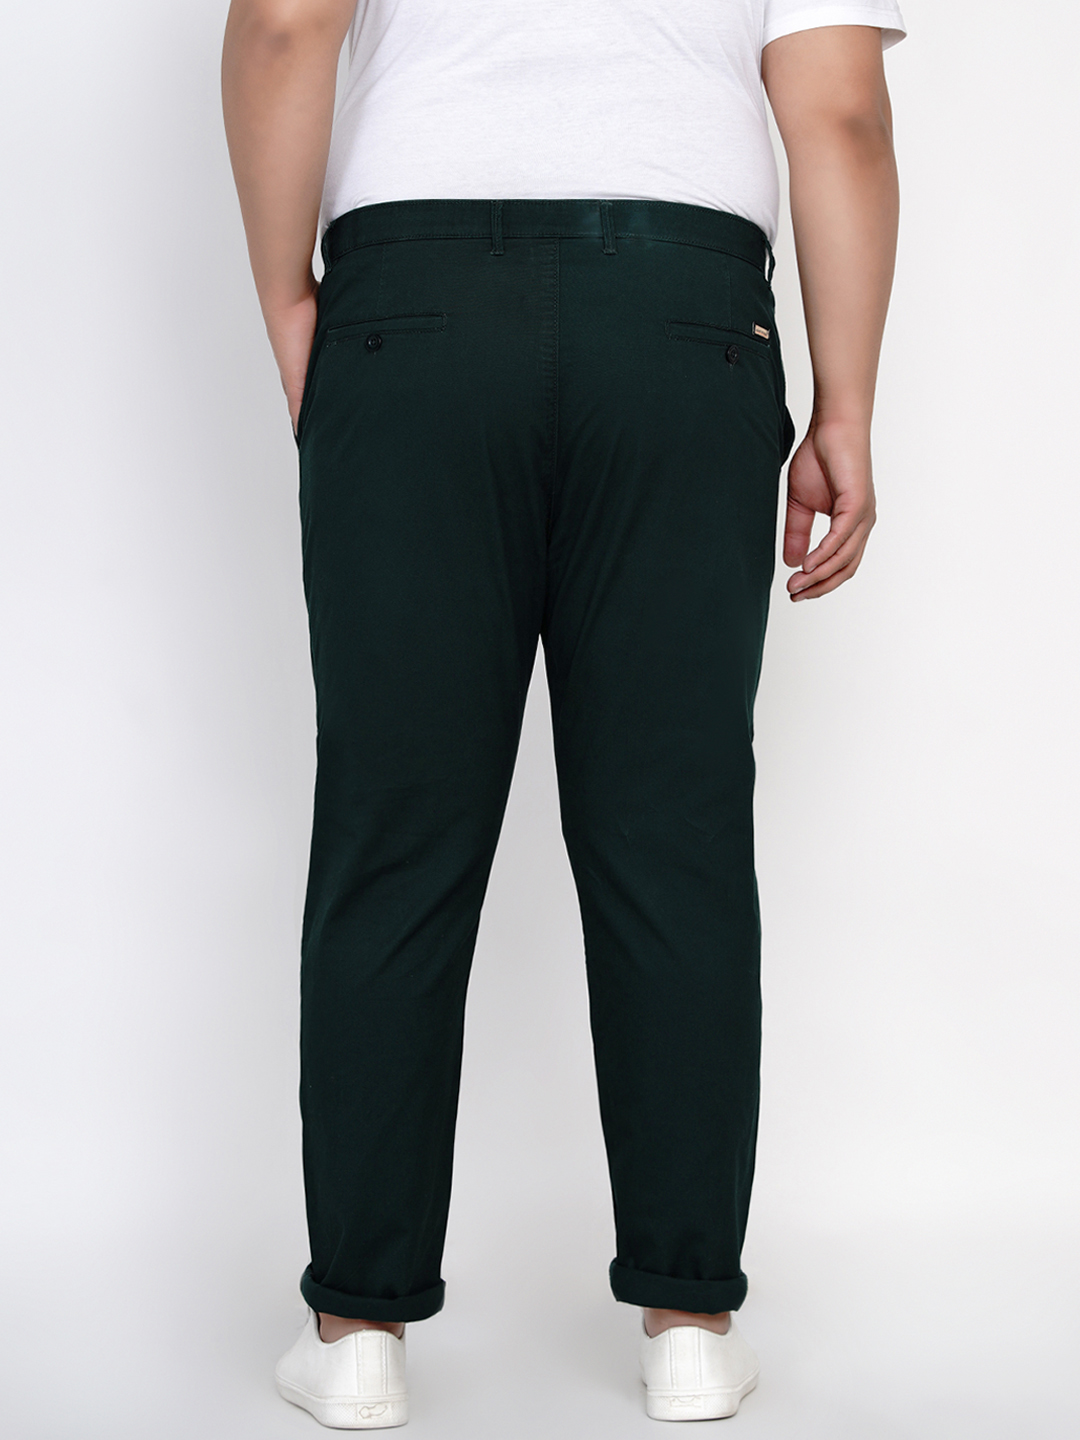 bottomwear/trousers/JPTR2161L/jptr2161l-5.jpg